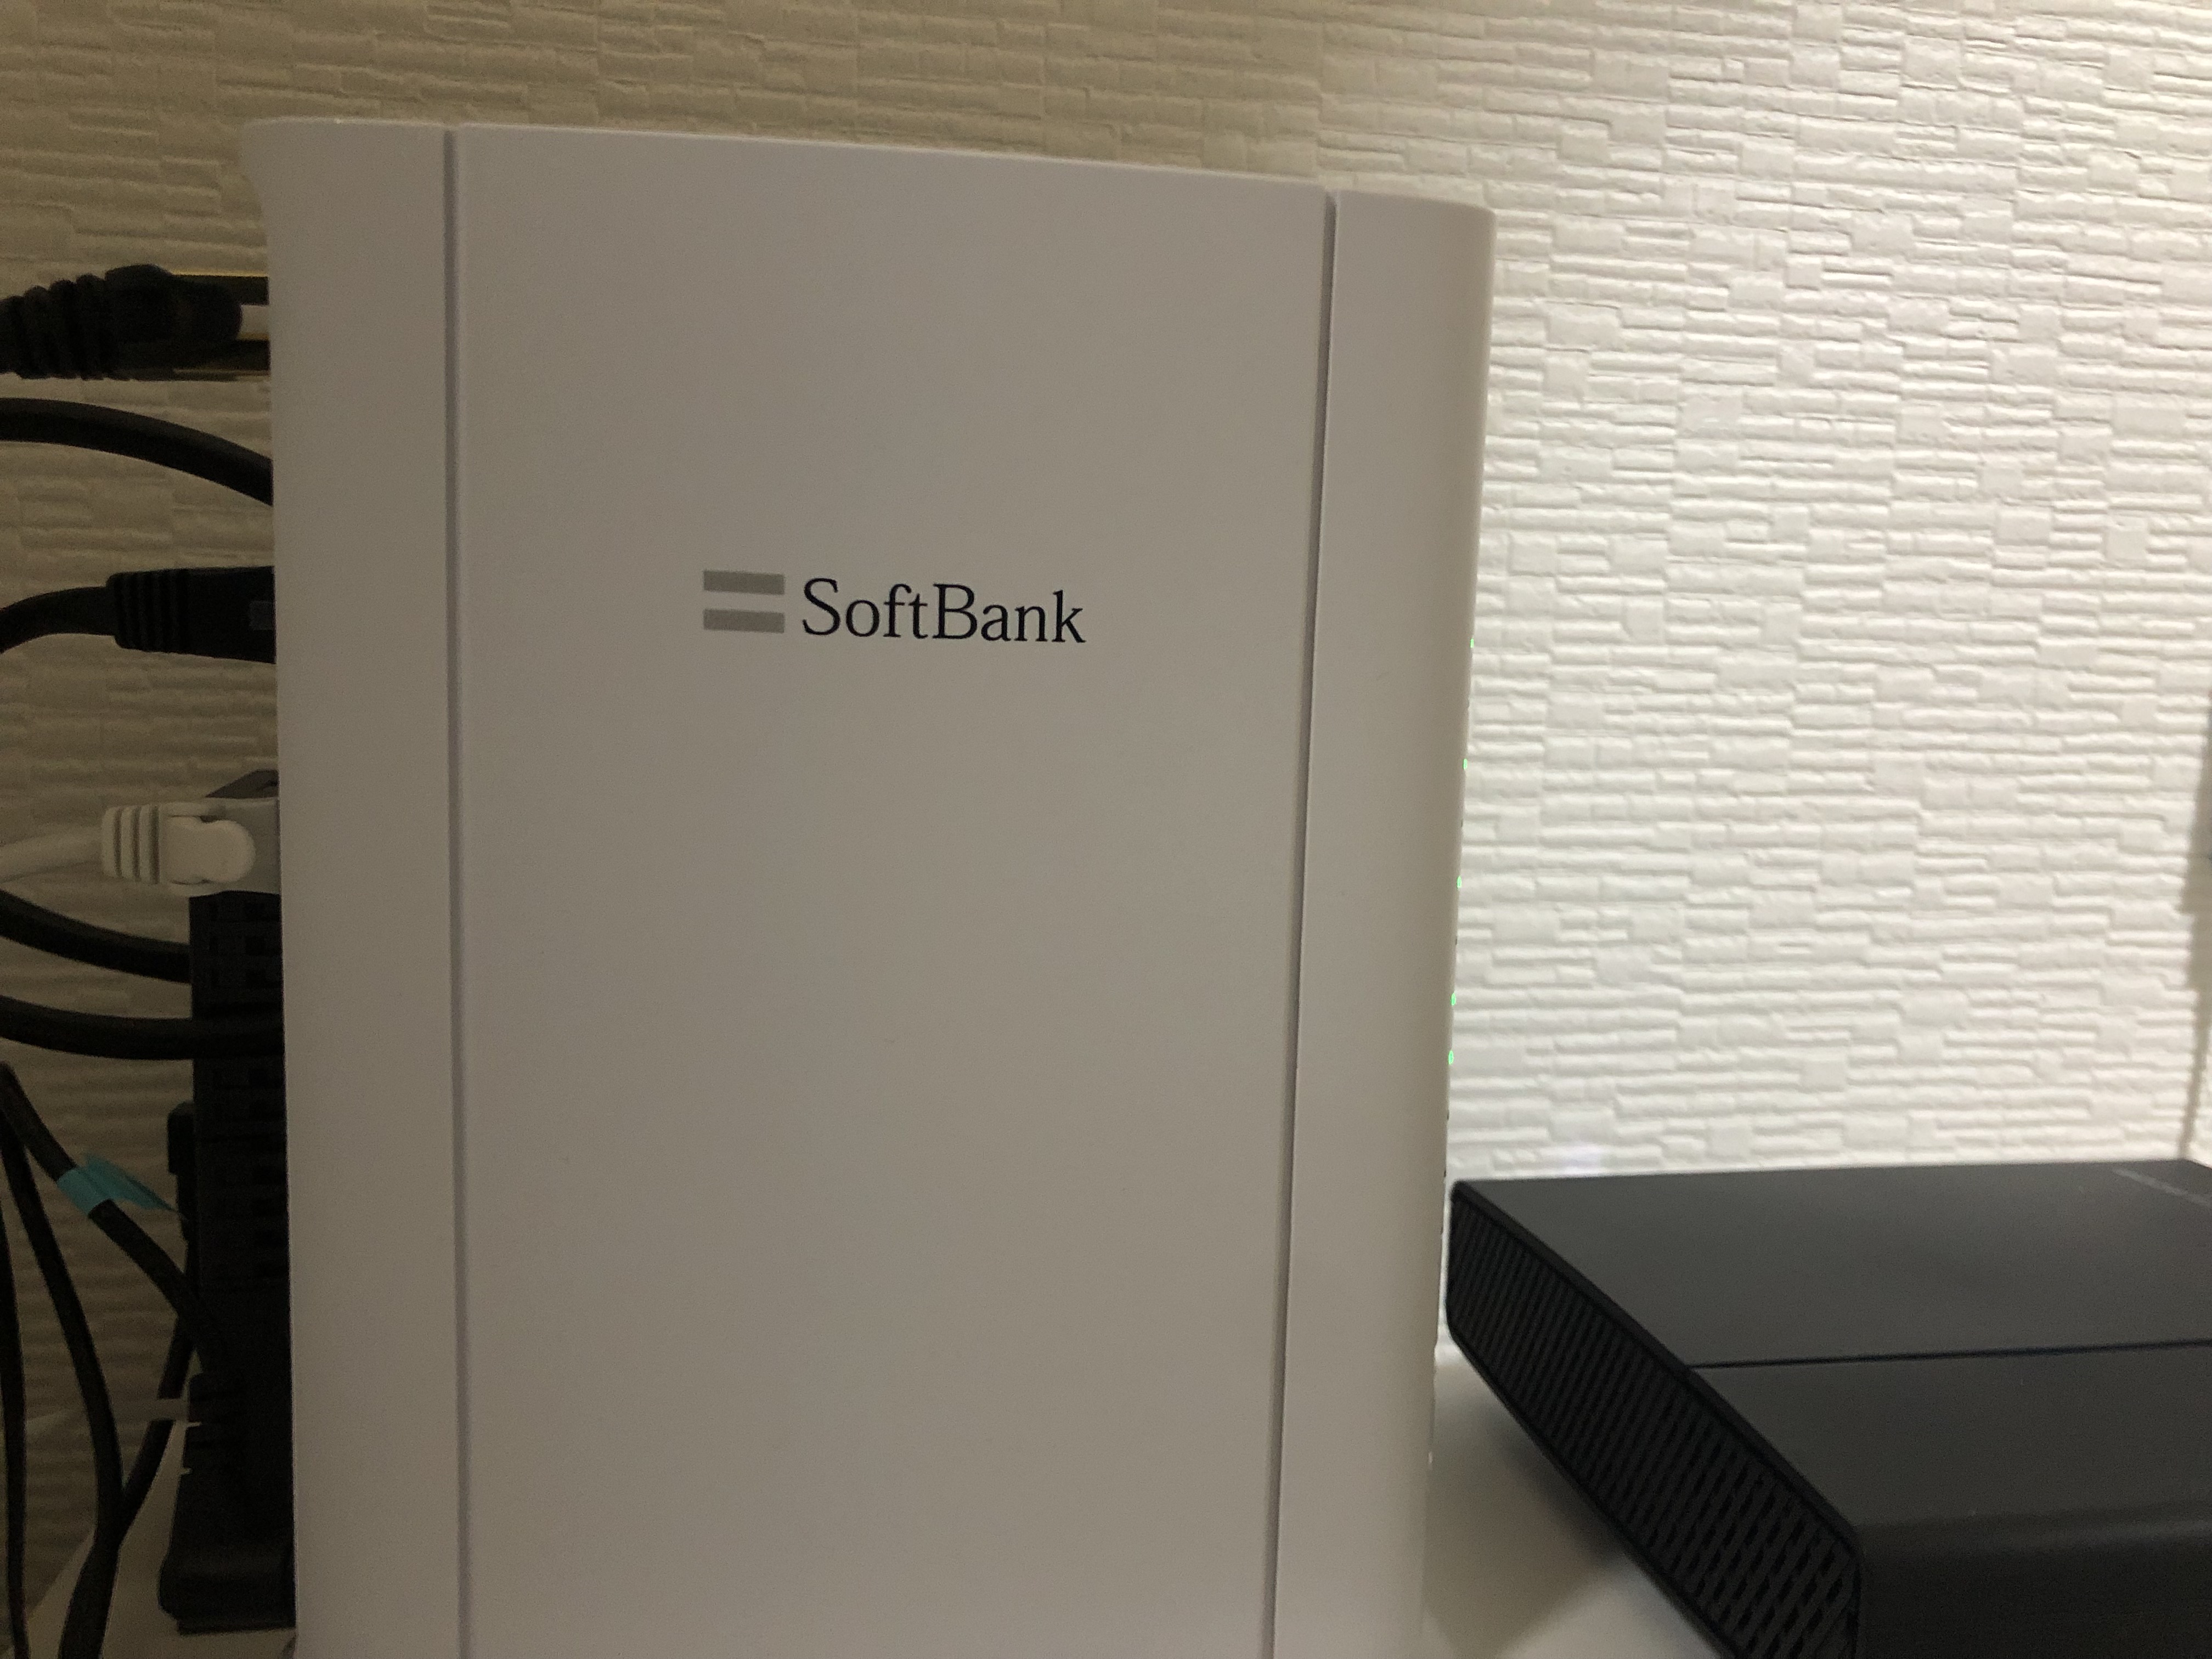 ソフトバンク光(Softbank)が遅い?無線LAN速度を約7倍速くする方法!